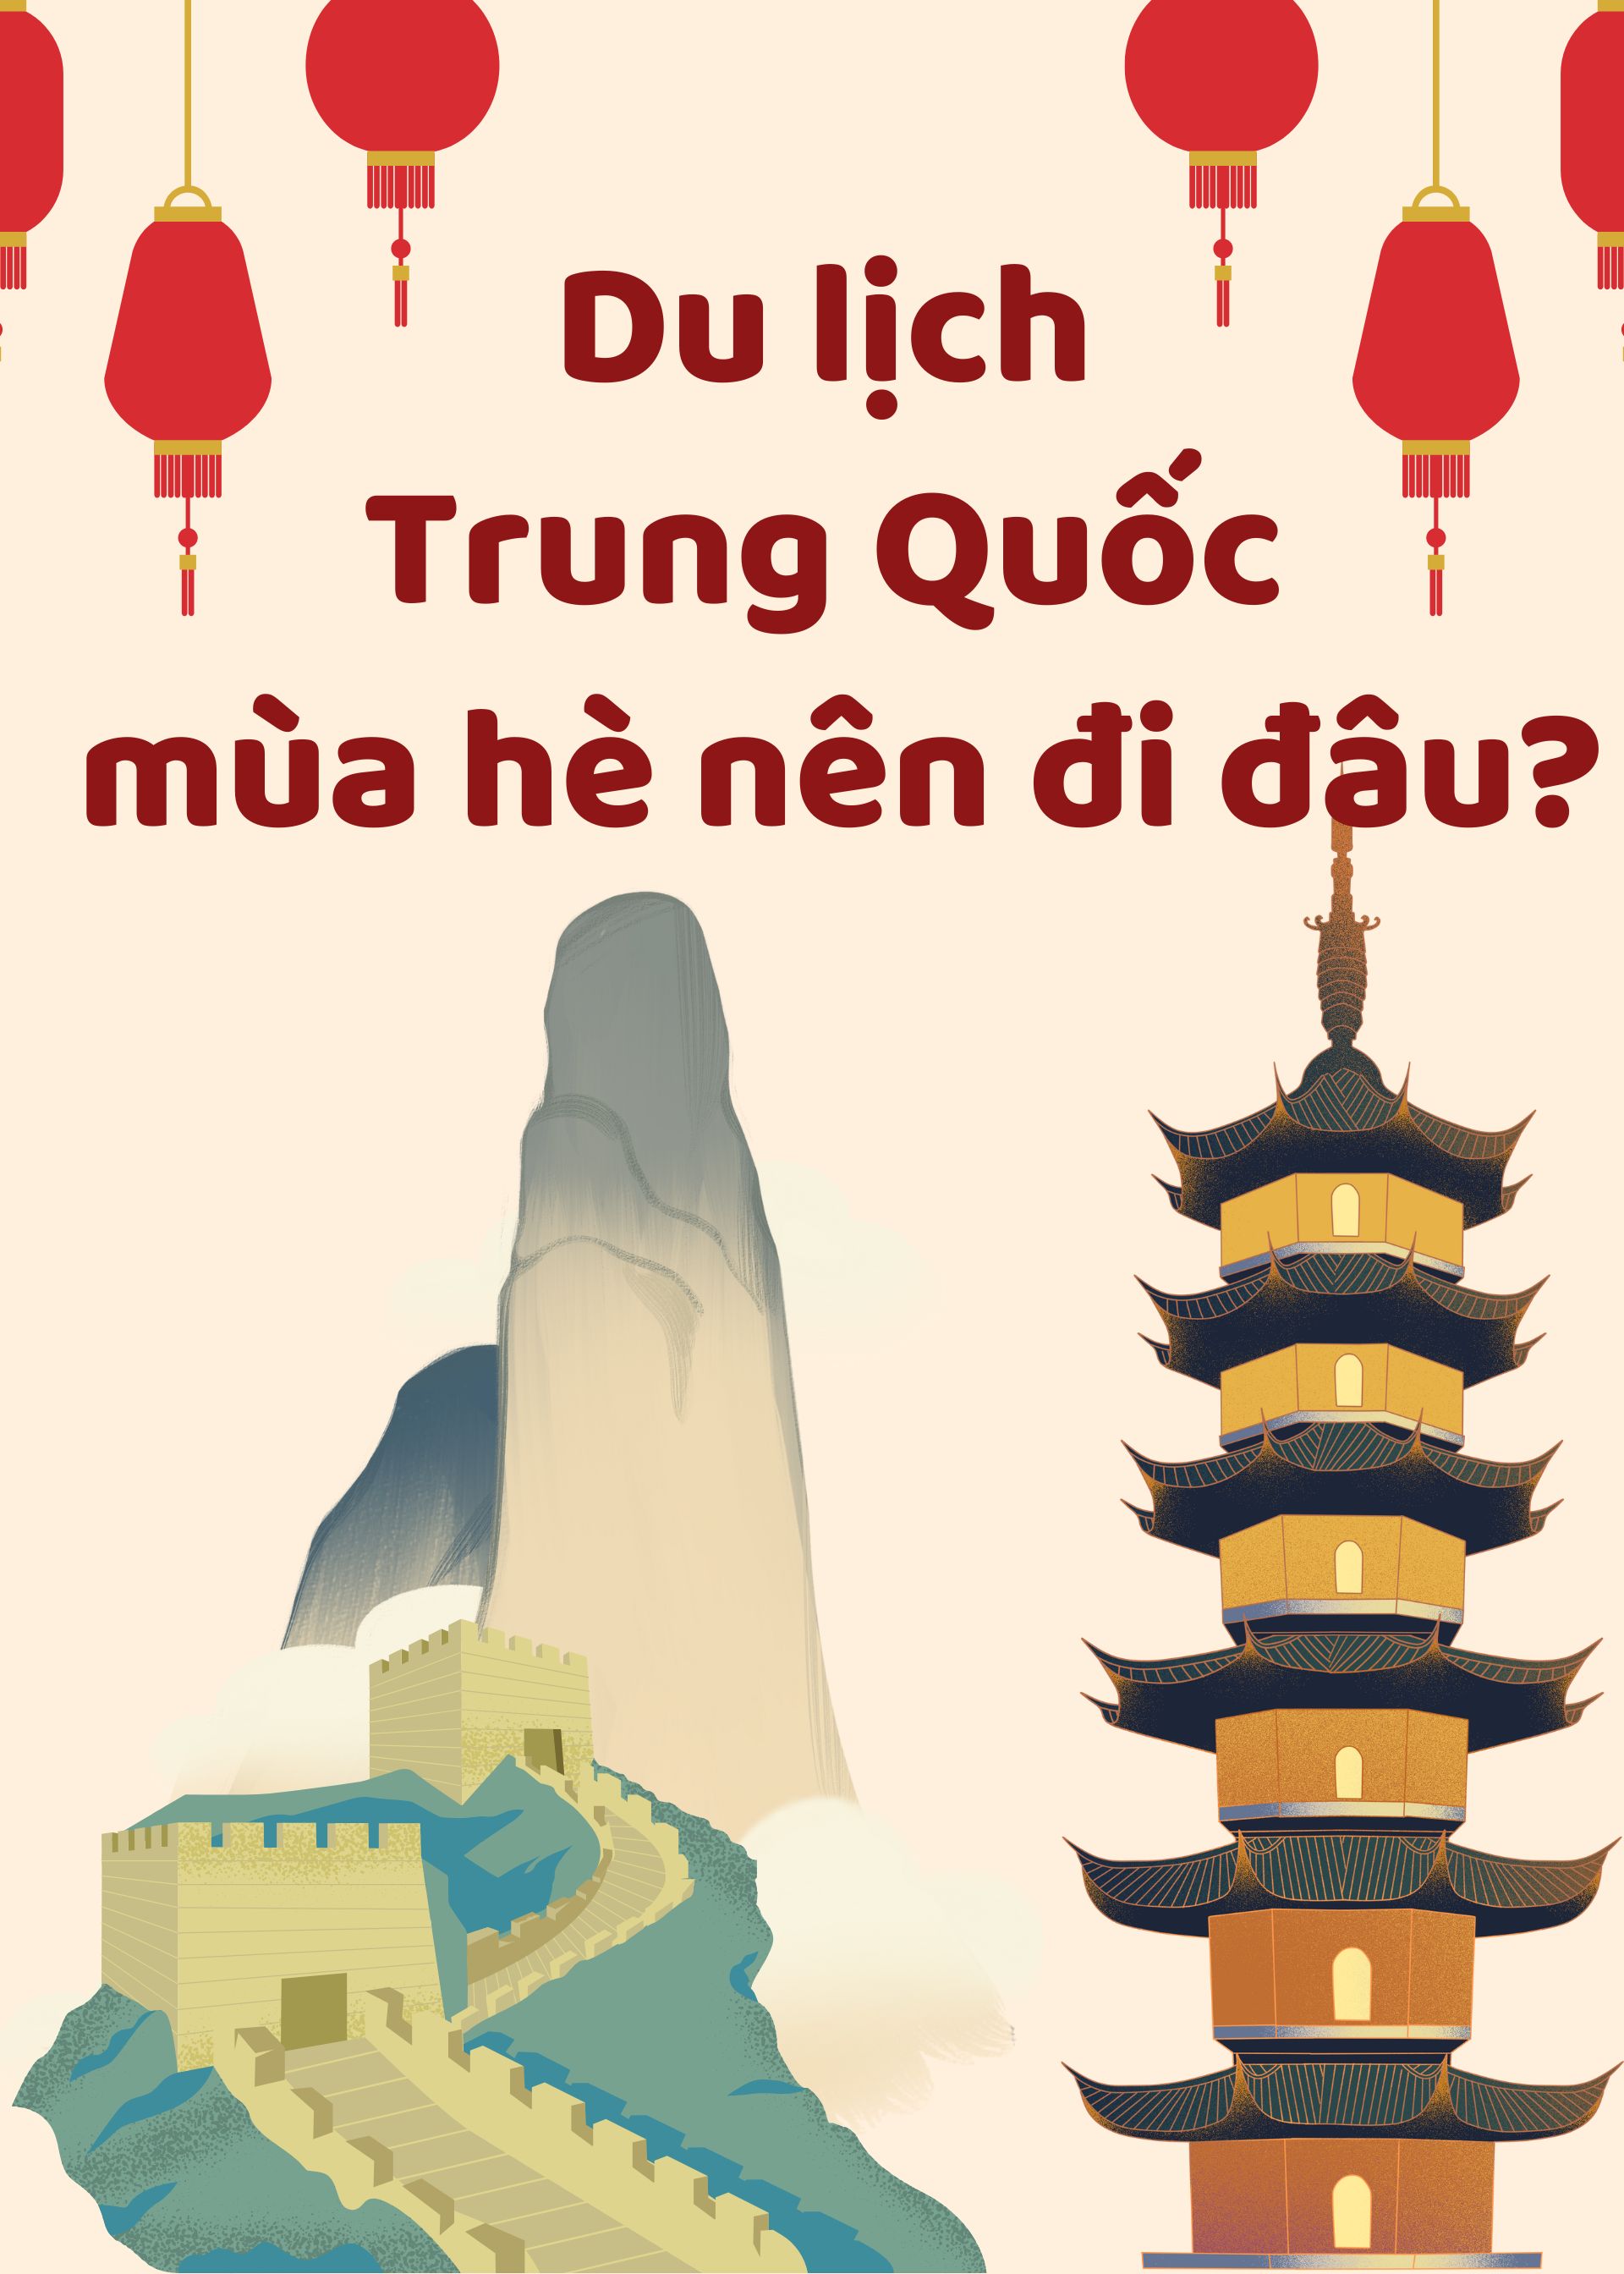 Du lịch Trung Quốc mùa hè nên đi đâu?